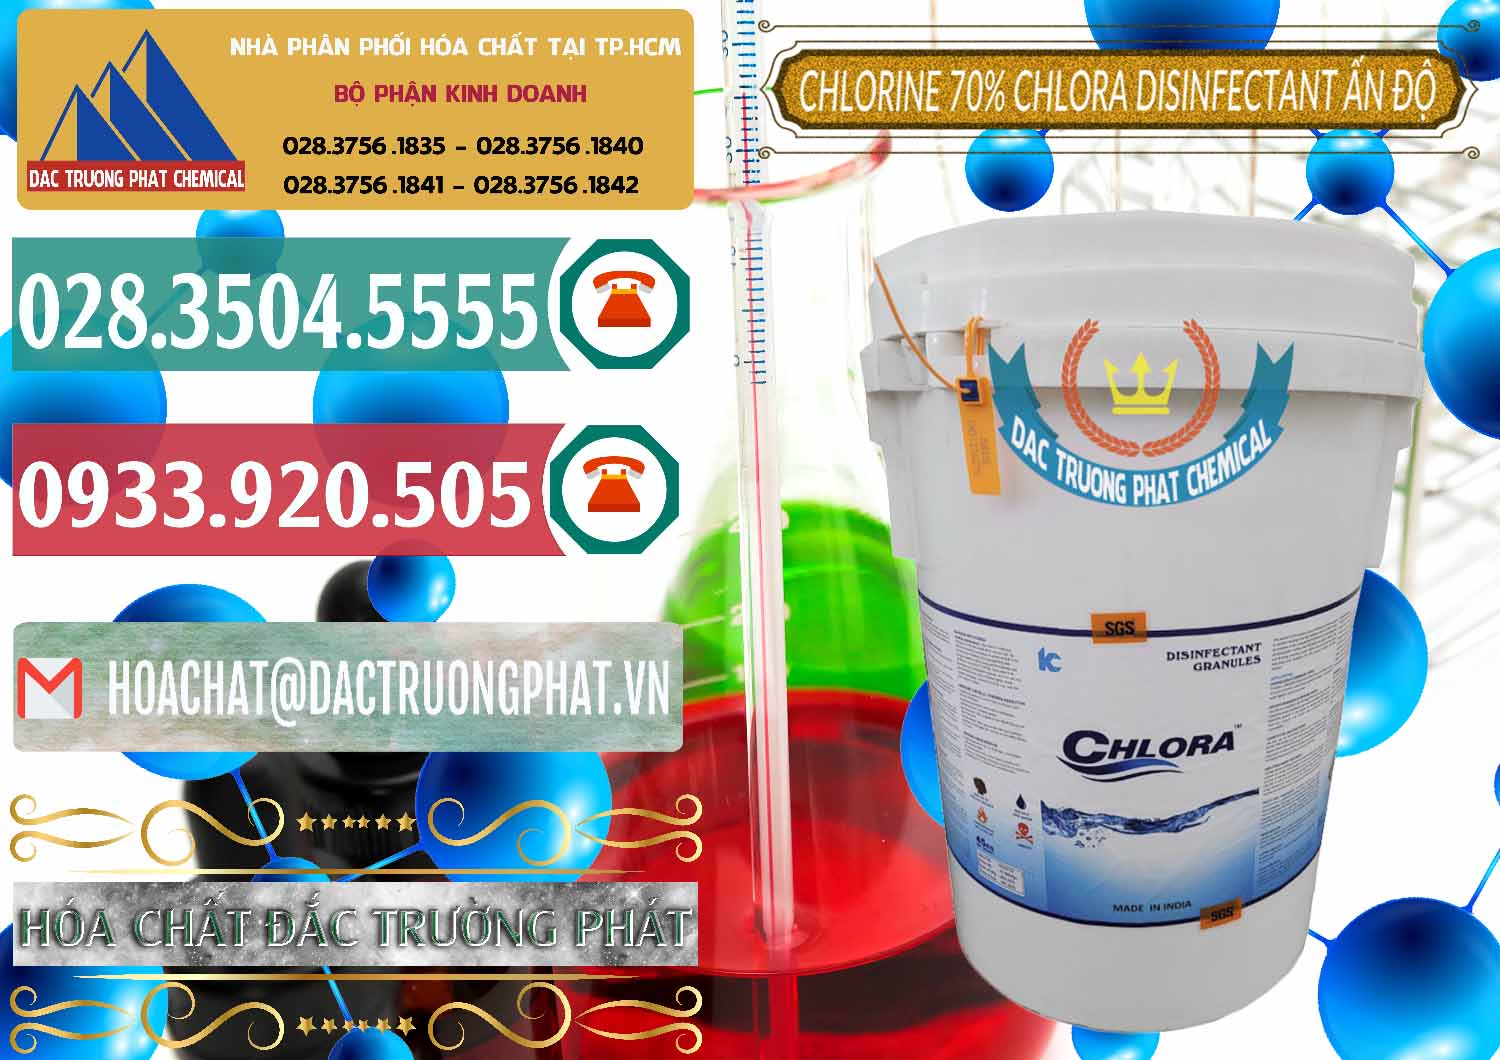 Nơi bán & cung cấp Chlorine – Clorin 70% Chlora Disinfectant Ấn Độ India - 0213 - Công ty cung ứng - phân phối hóa chất tại TP.HCM - muabanhoachat.vn